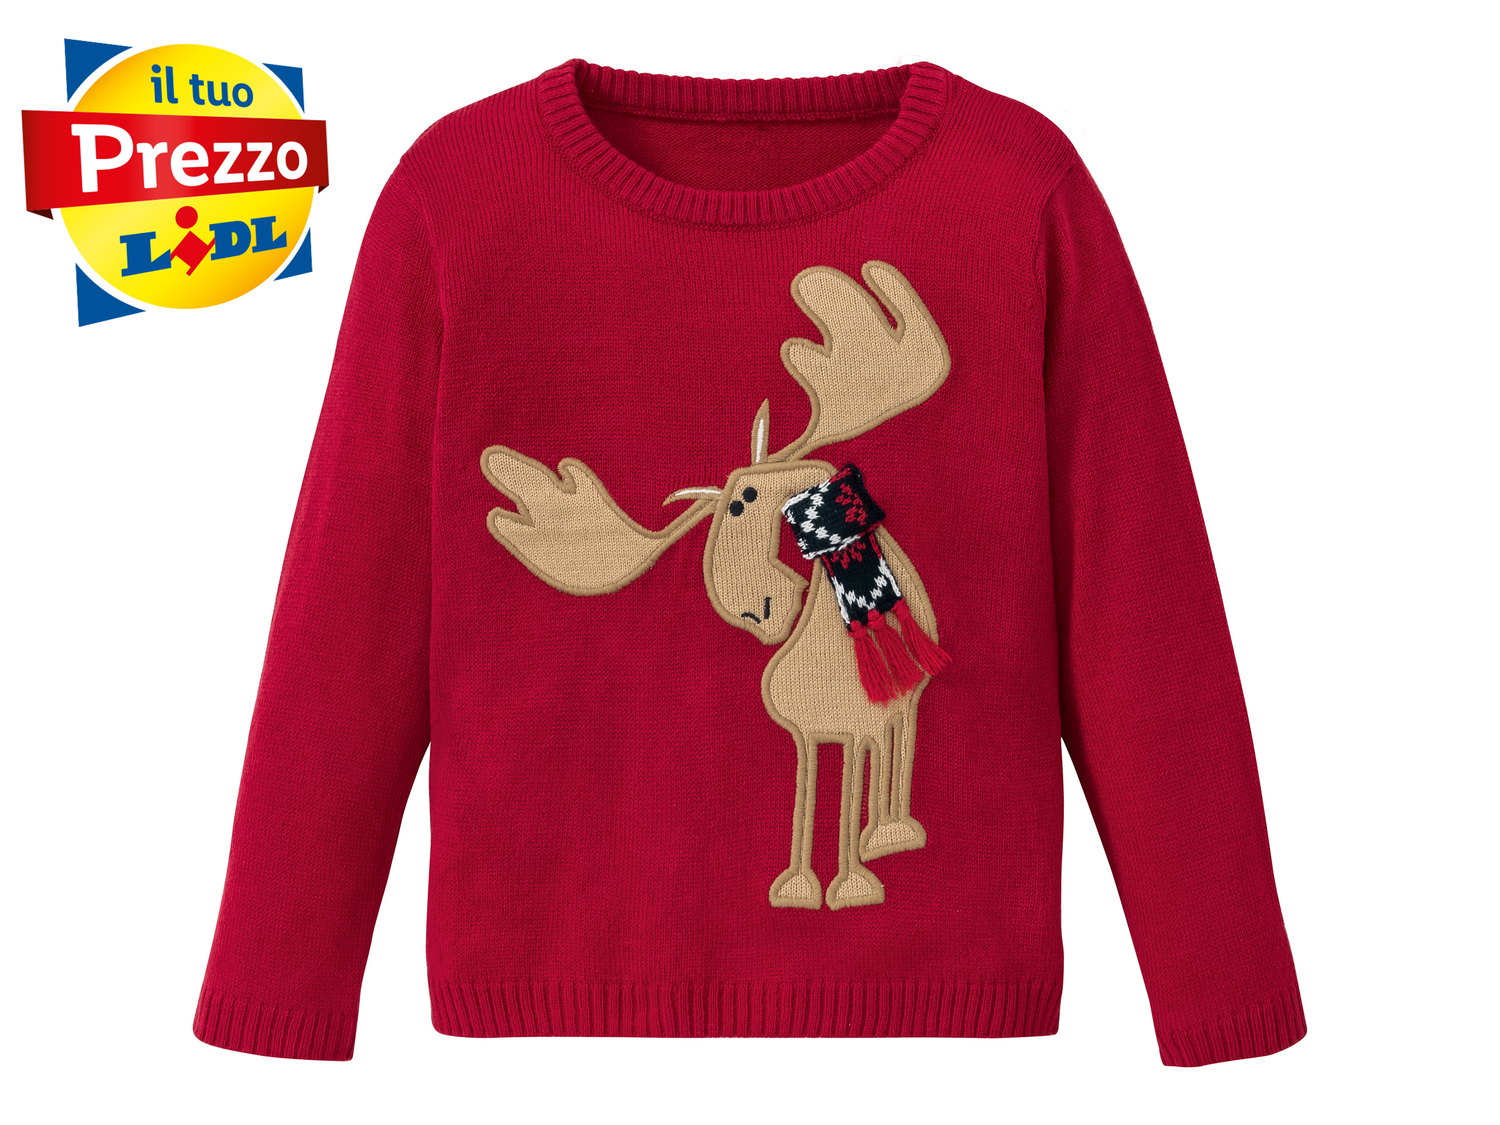 Pullover natalizio da bambini Lupilu, prezzo 8.99 € 
Misure: 1-6 anni
Taglie ...